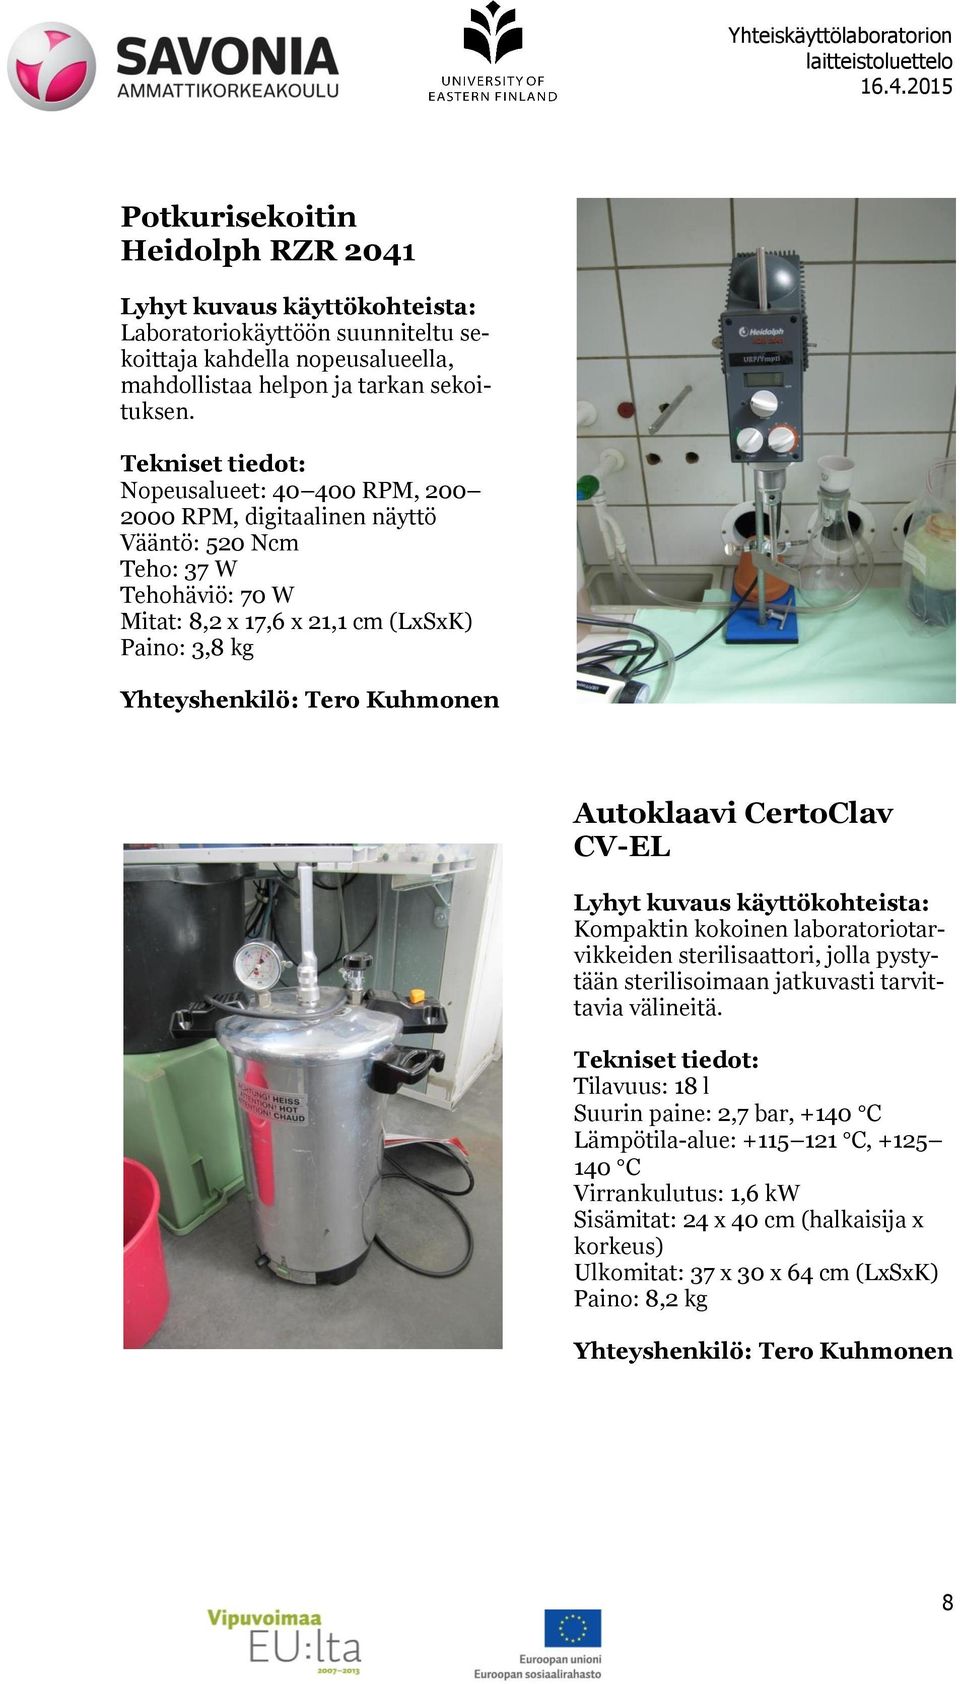 Autoklaavi CertoClav CV-EL Kompaktin kokoinen laboratoriotarvikkeiden sterilisaattori, jolla pystytään sterilisoimaan jatkuvasti tarvittavia välineitä.